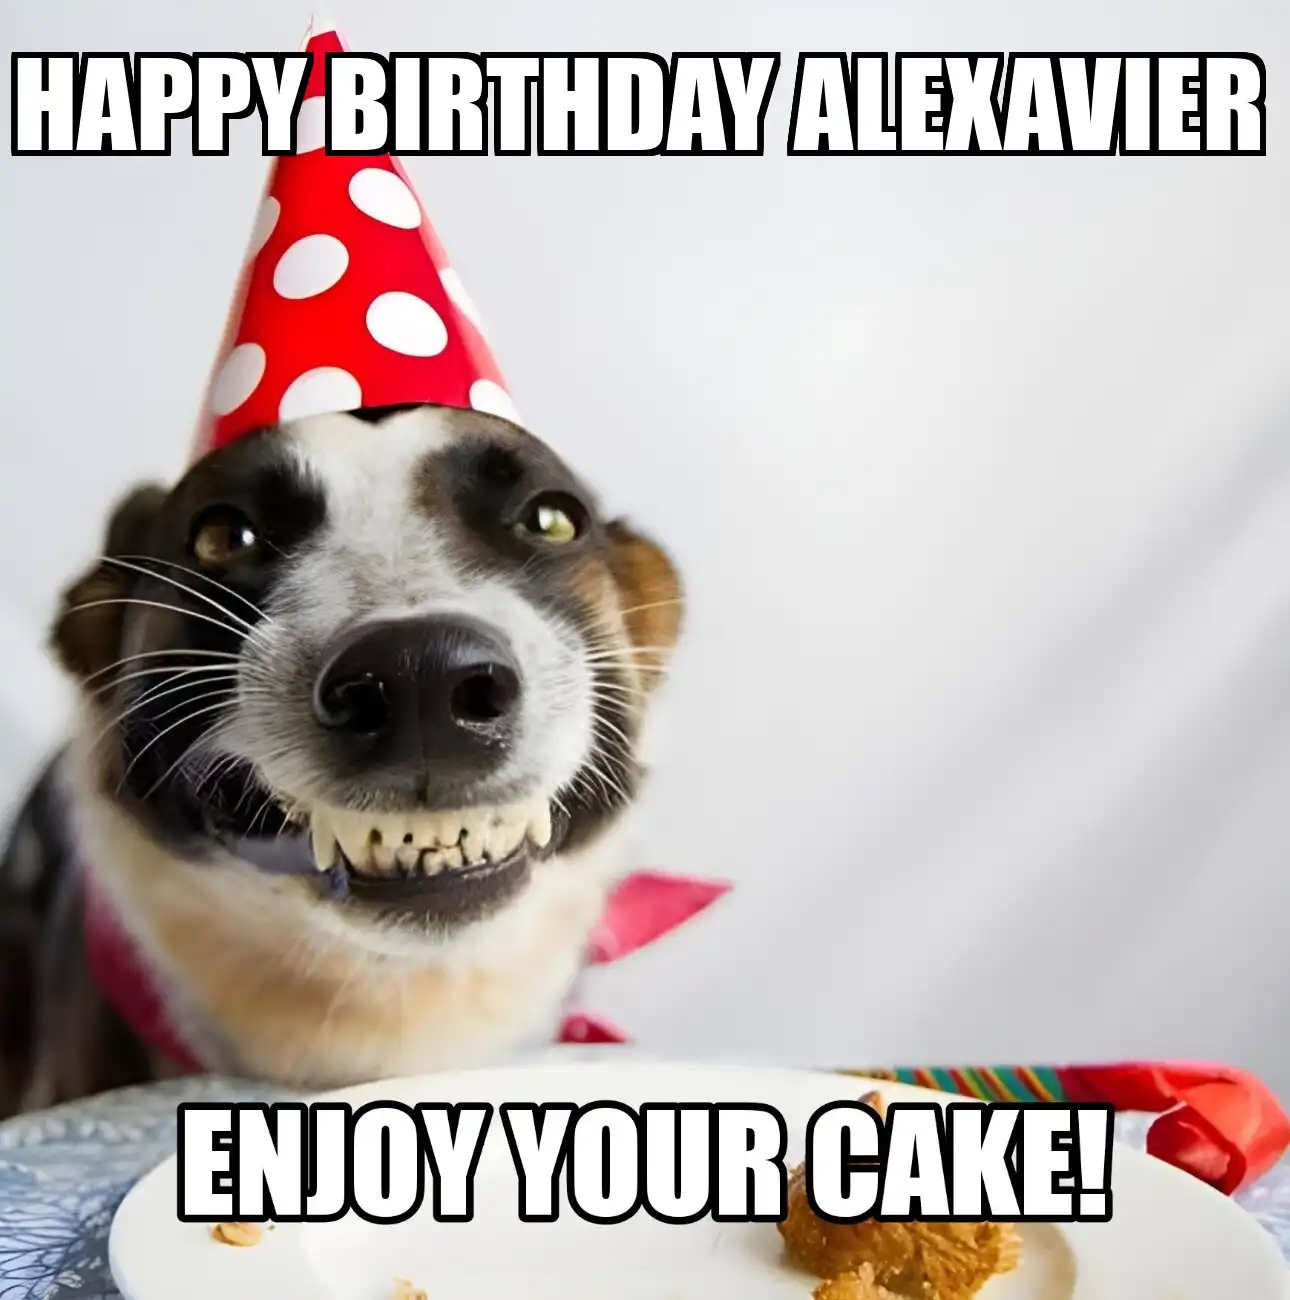 Happy Birthday Alexavier Enjoy Your Cake Dog Meme